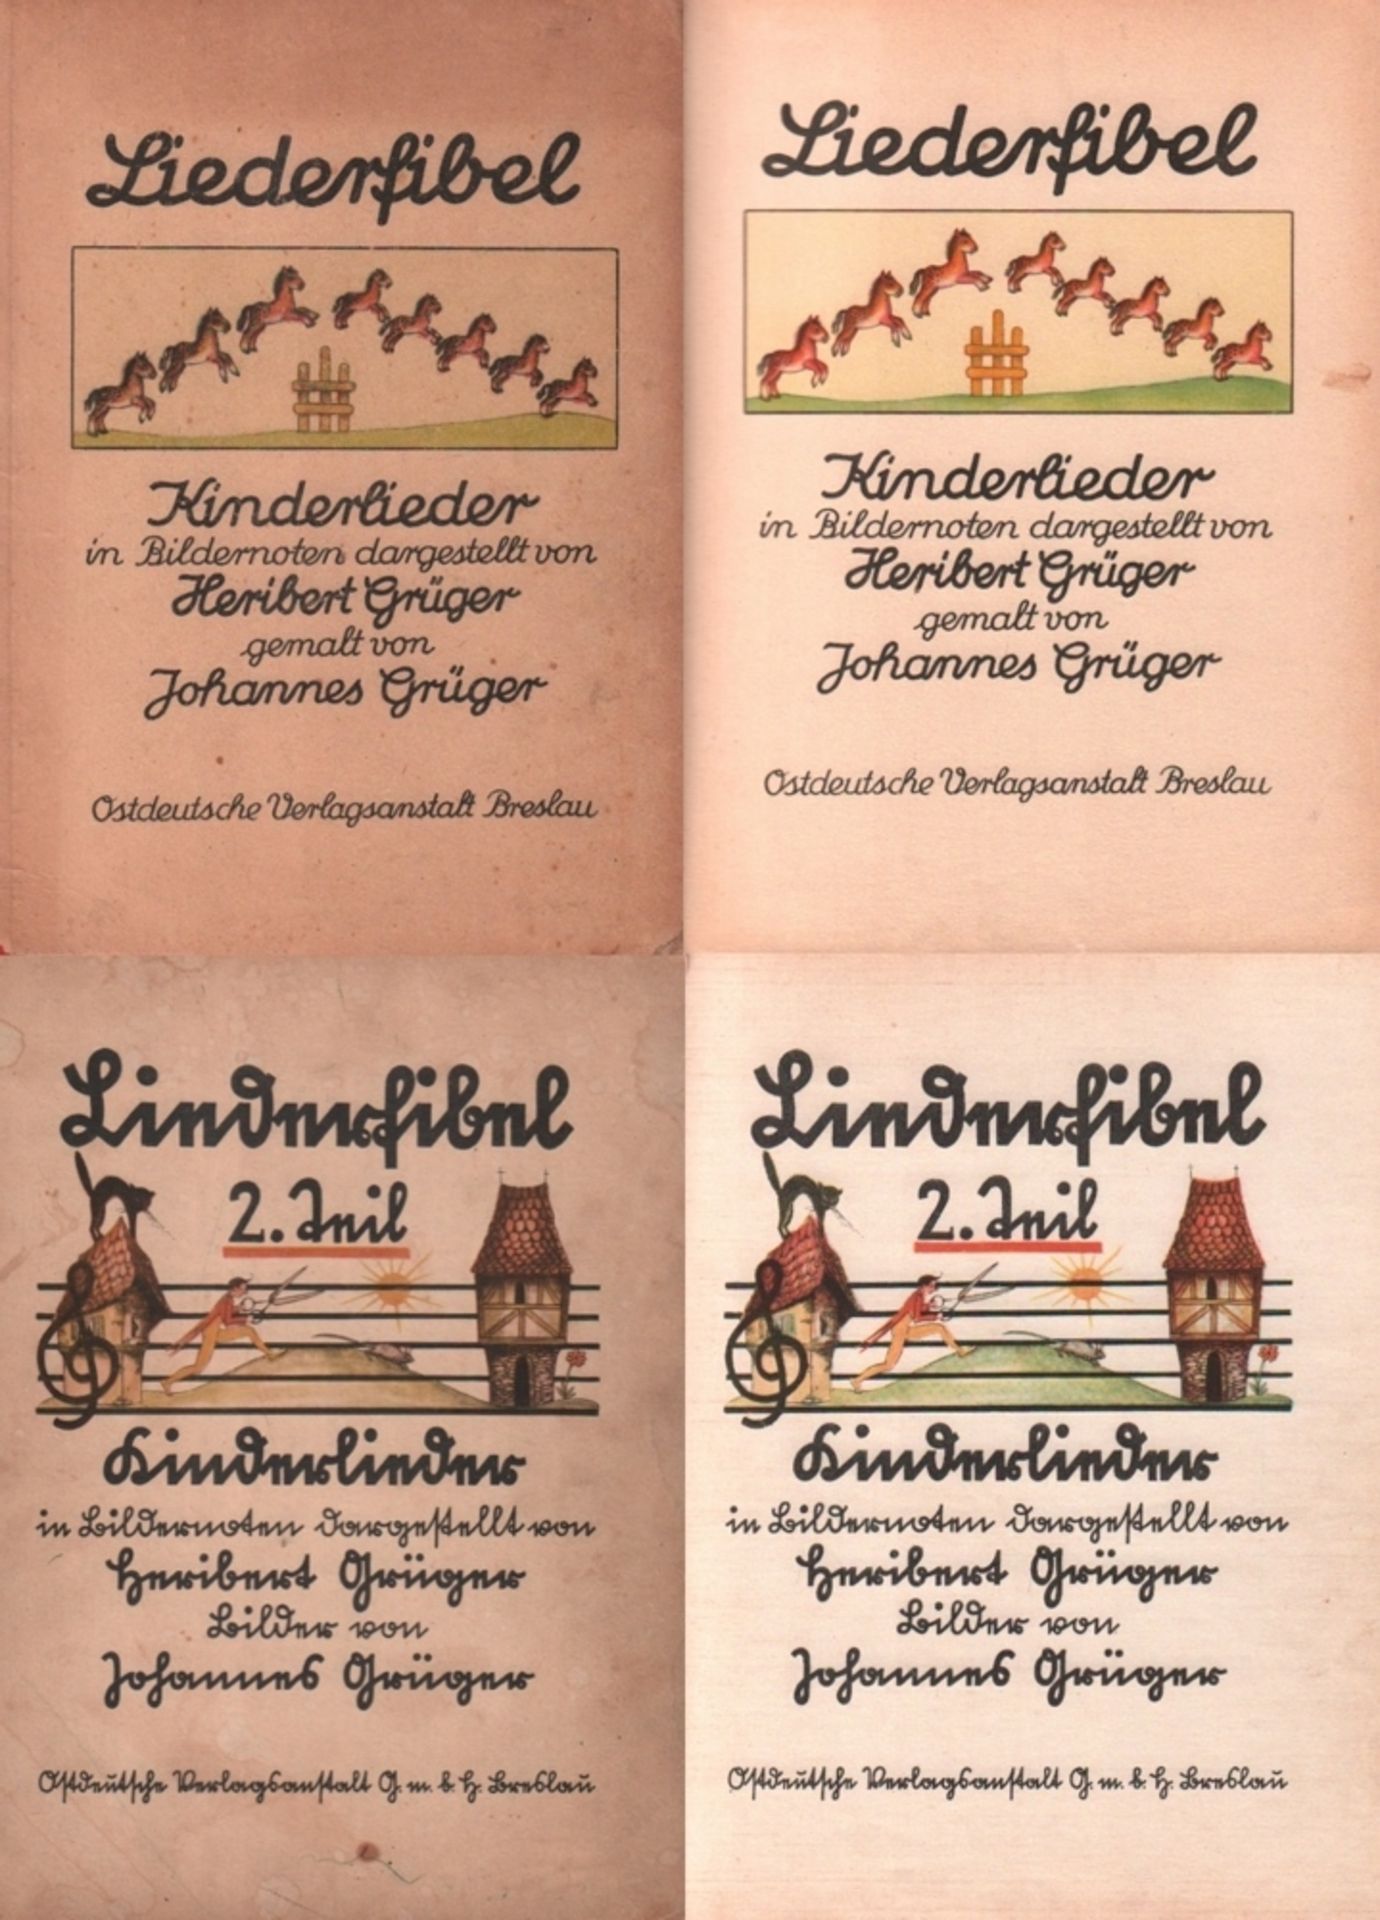 Kinderbuch. Grüger, Heribert. Liederfibel. Kinderlieder in Bildernoten dargestellt. 2 Bände (von 3).